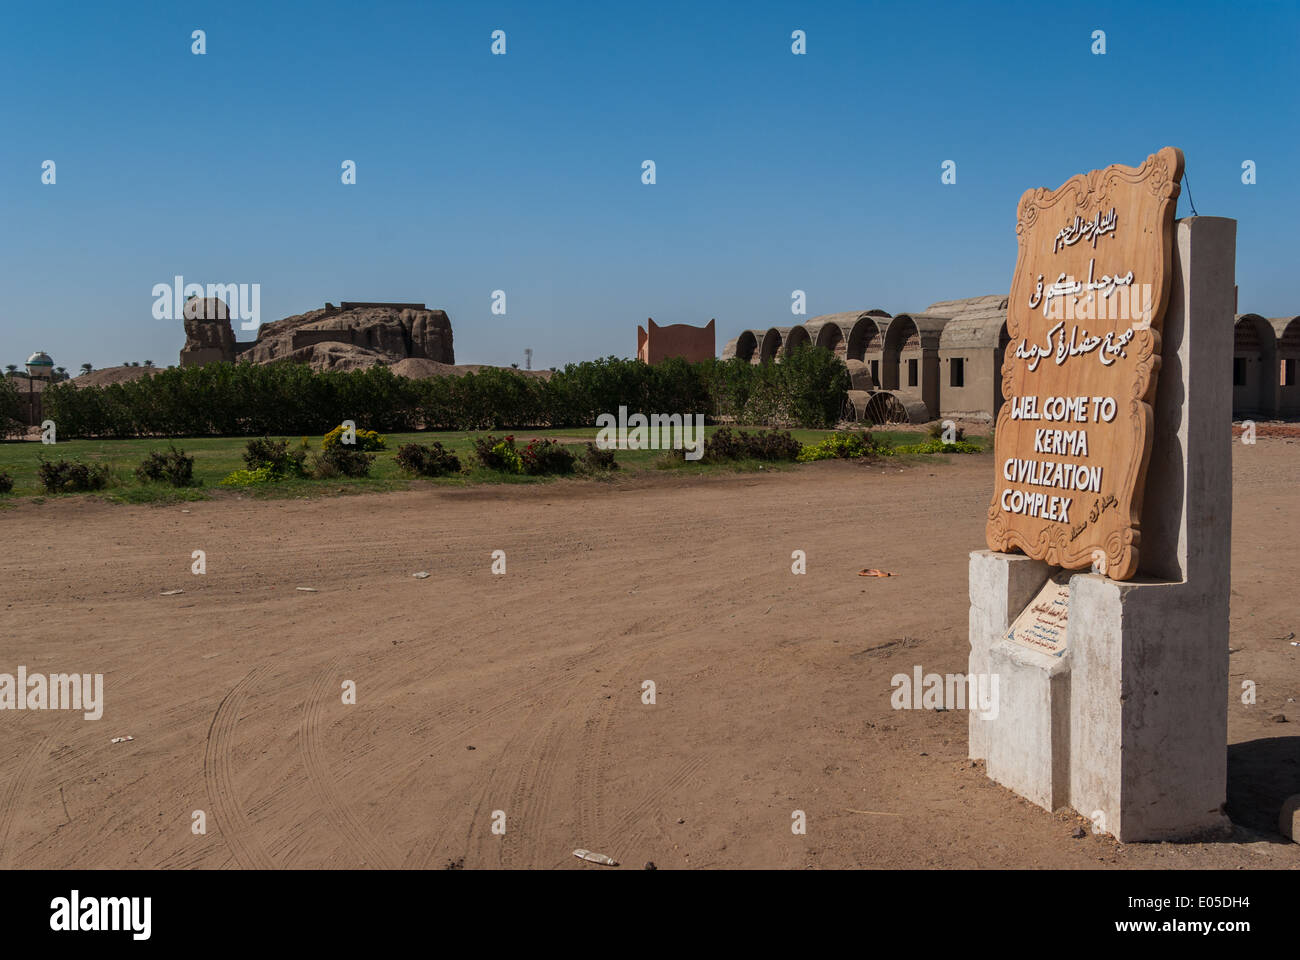 La civilisation Kerma Museum et Western complexe Deffufa, kerma, nord du Soudan Banque D'Images